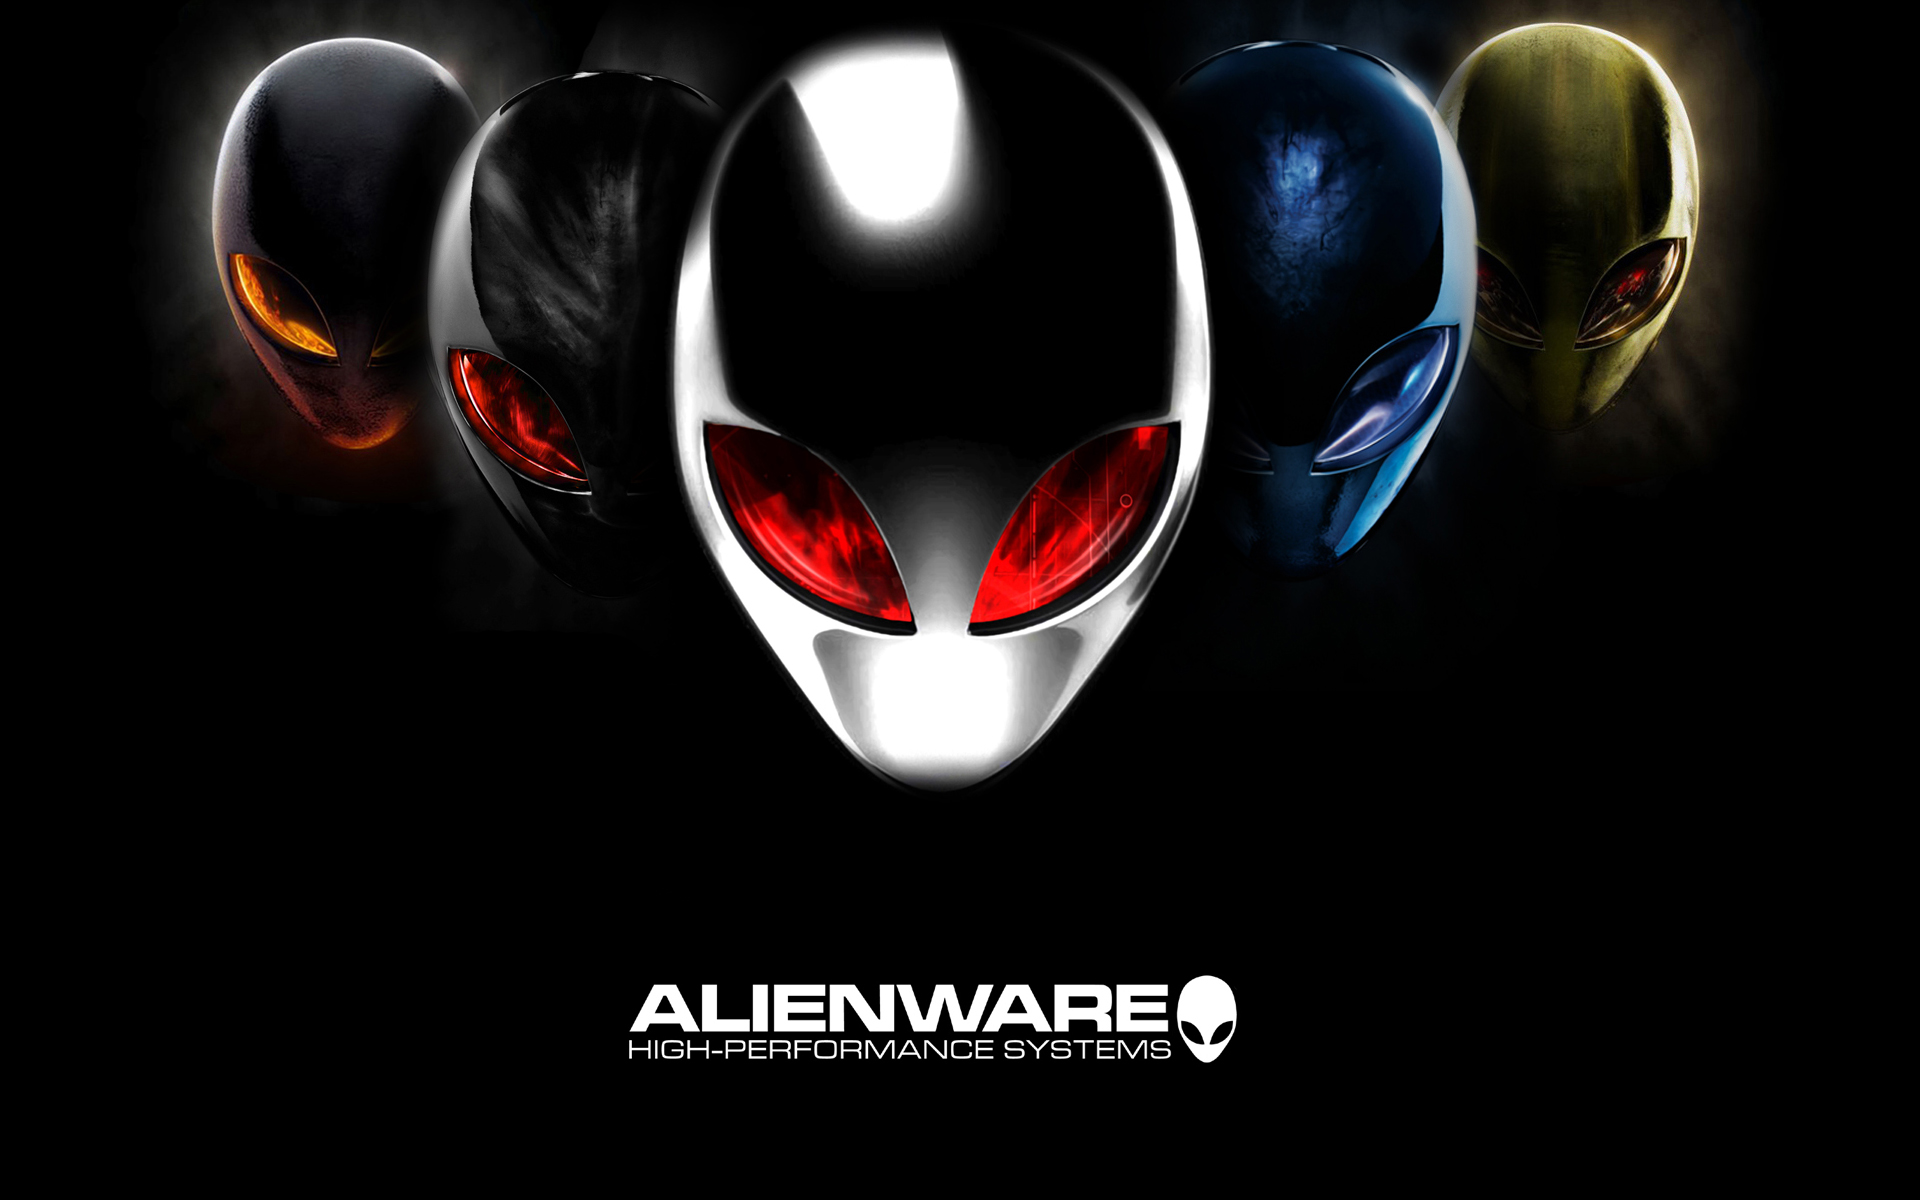 HD Alienware Wallpapers 1920x1080 & Alienware Backgrounds for ...